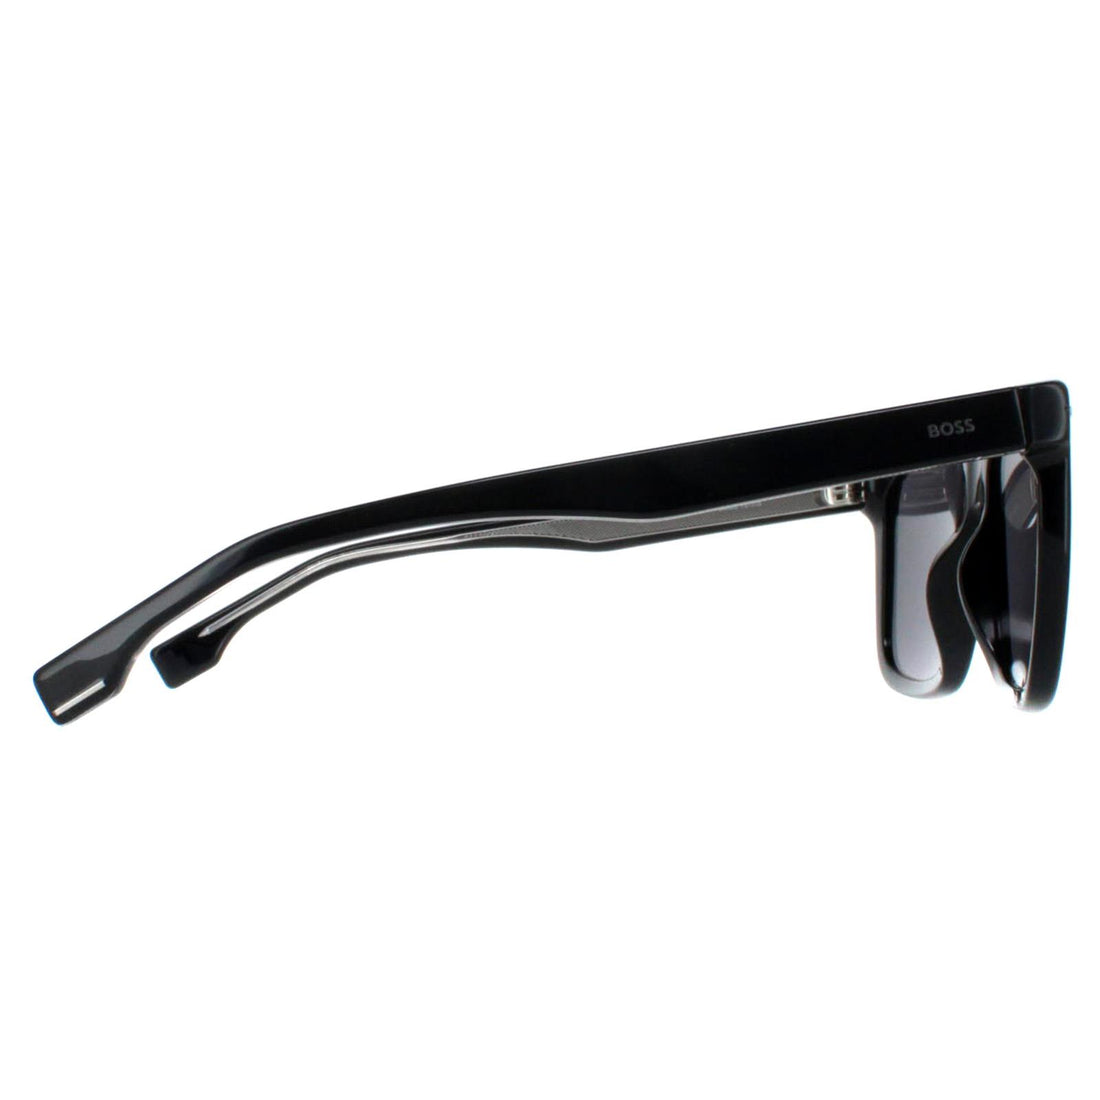 Hugo Boss Sunglasses BOSS 1317/S 284 IR Black Ruthenium Grey Blue